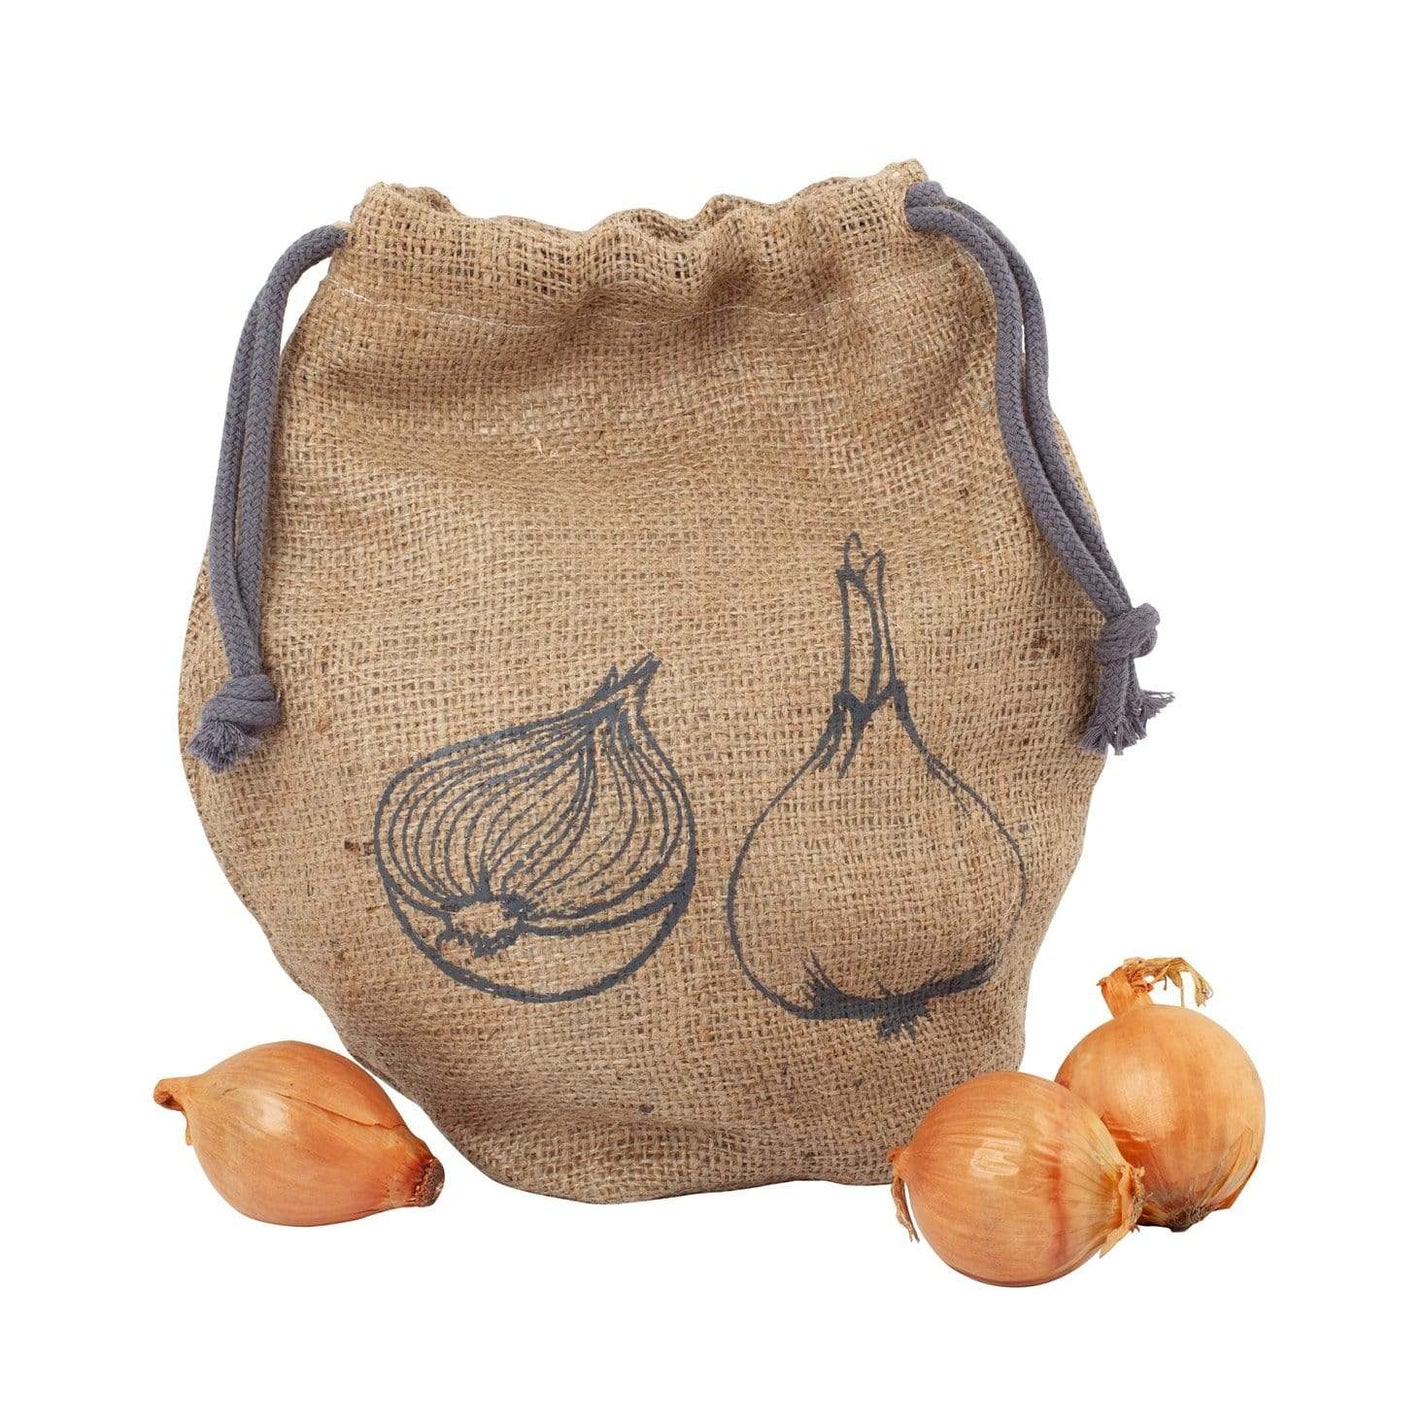 Redecker Onion Bag